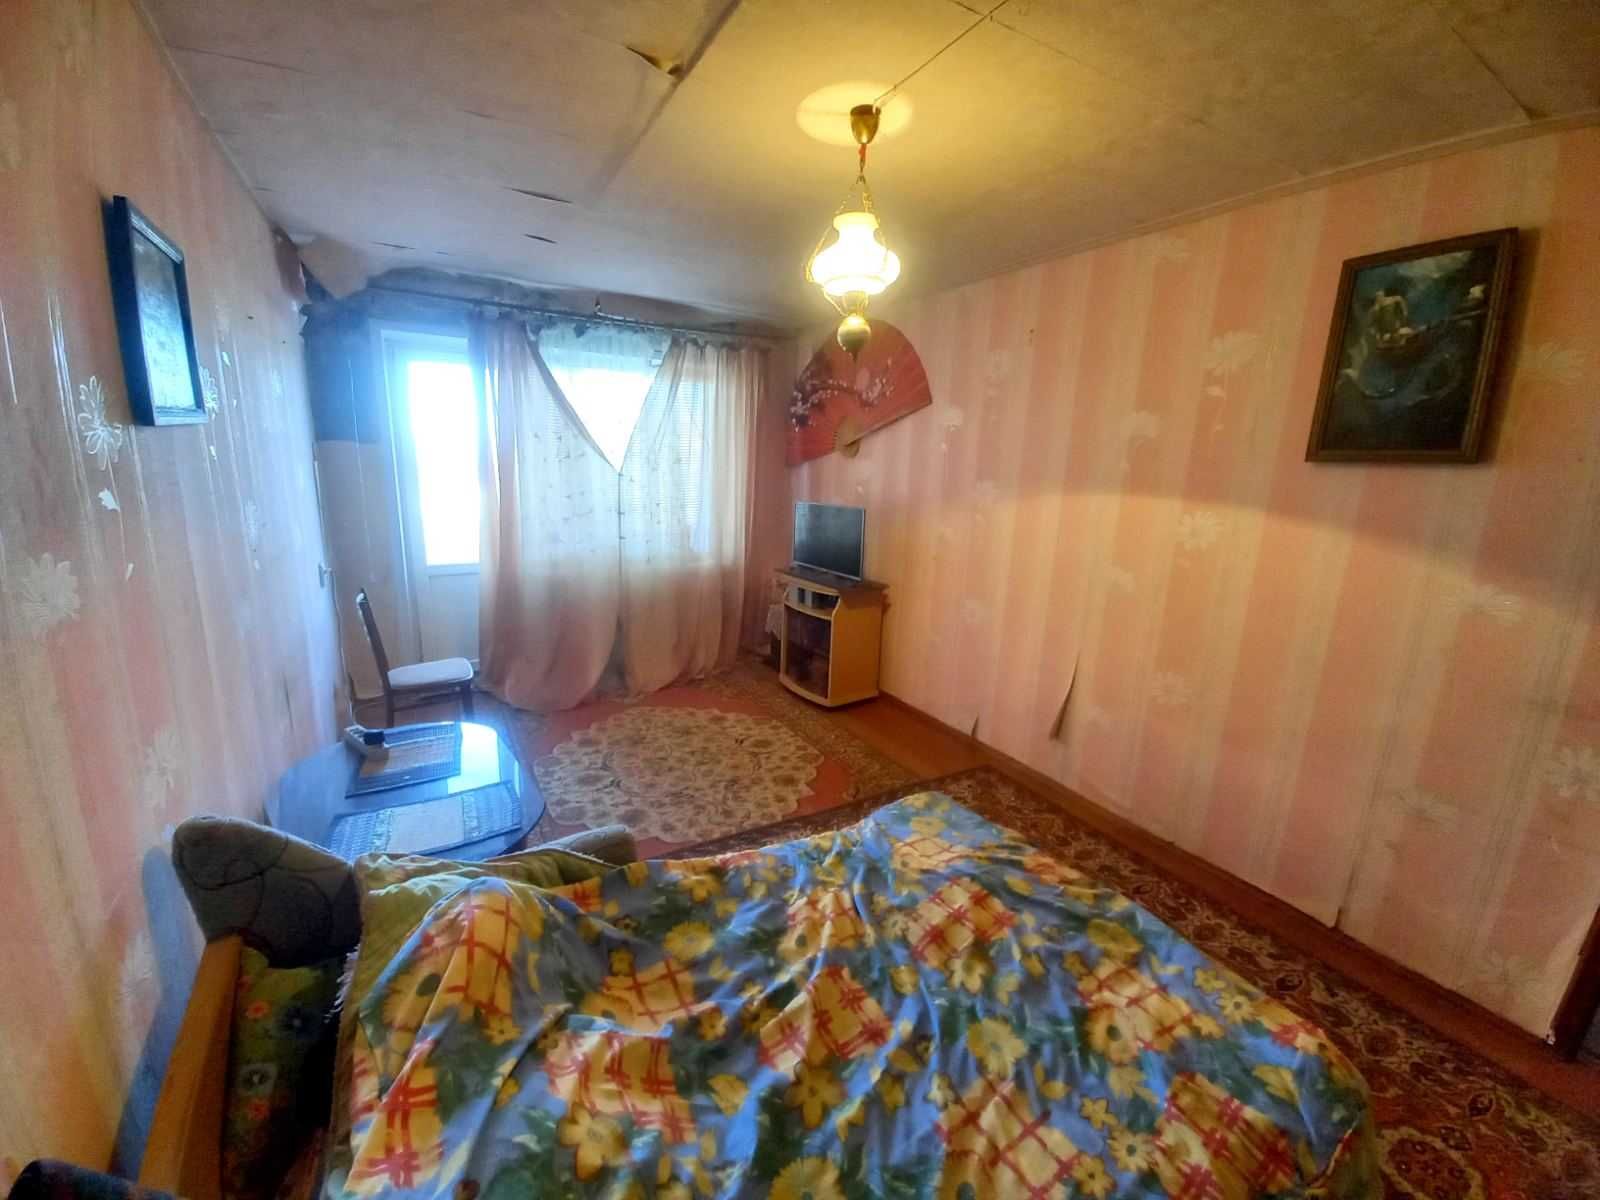 Квартира 1 комнатная ул.Бахмутская(Архангельская) 3 на Станкострое